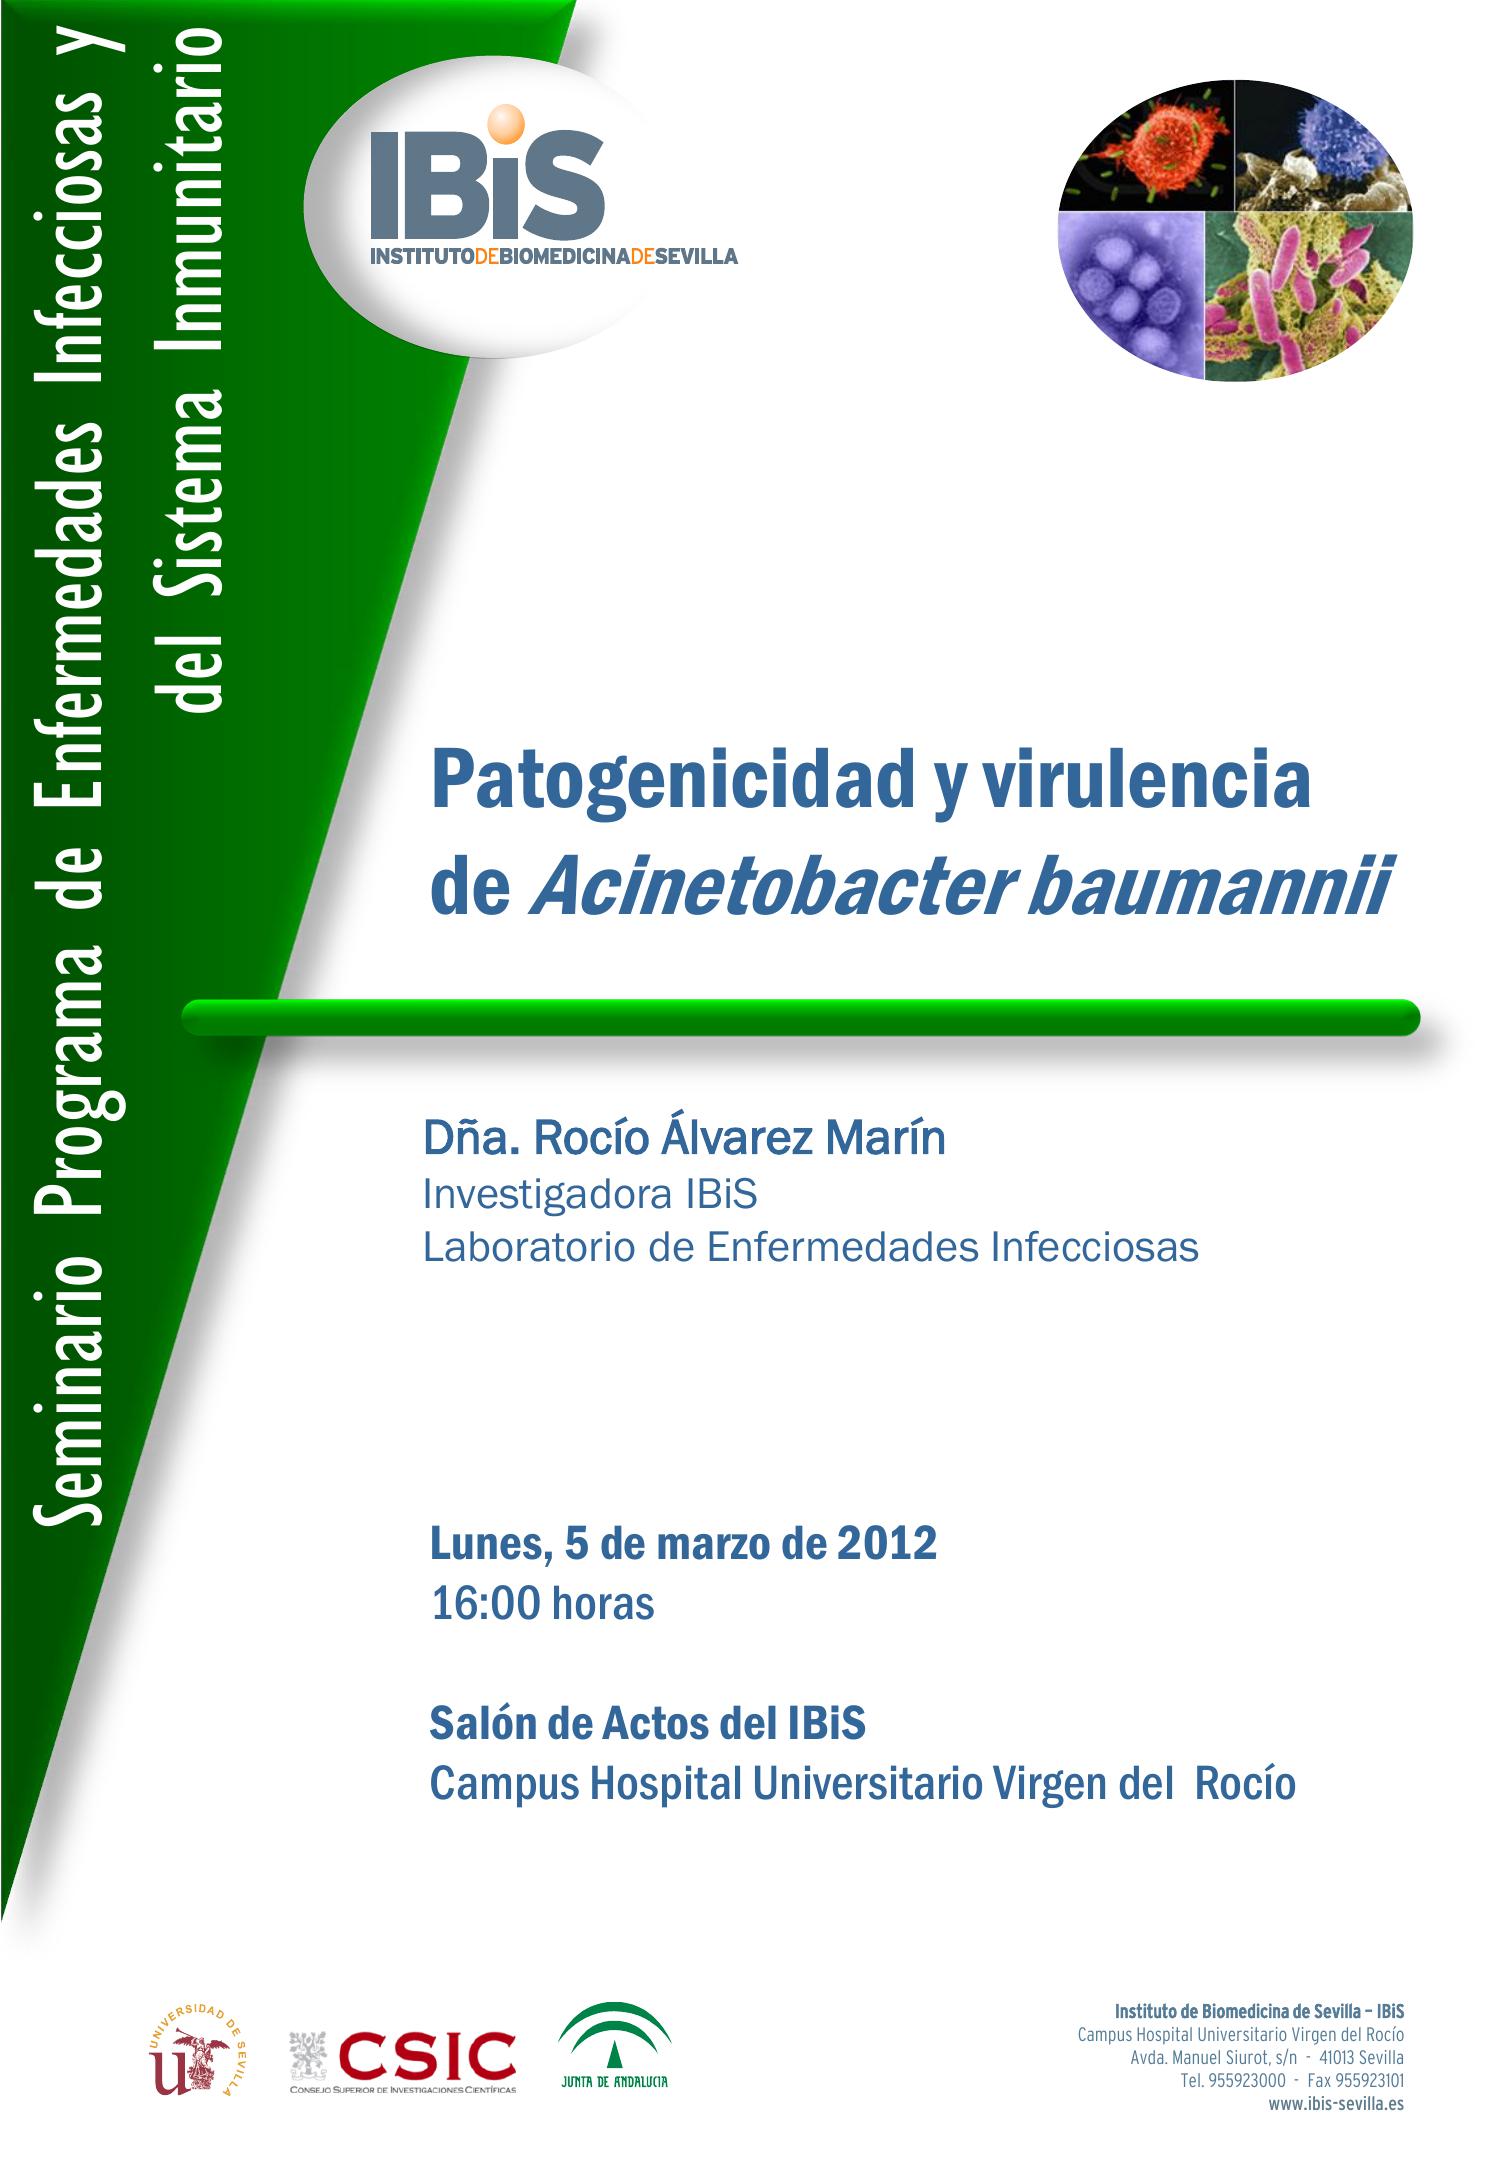 Poster: Patogenicidad y virulencia de Acinetobacter baumannii